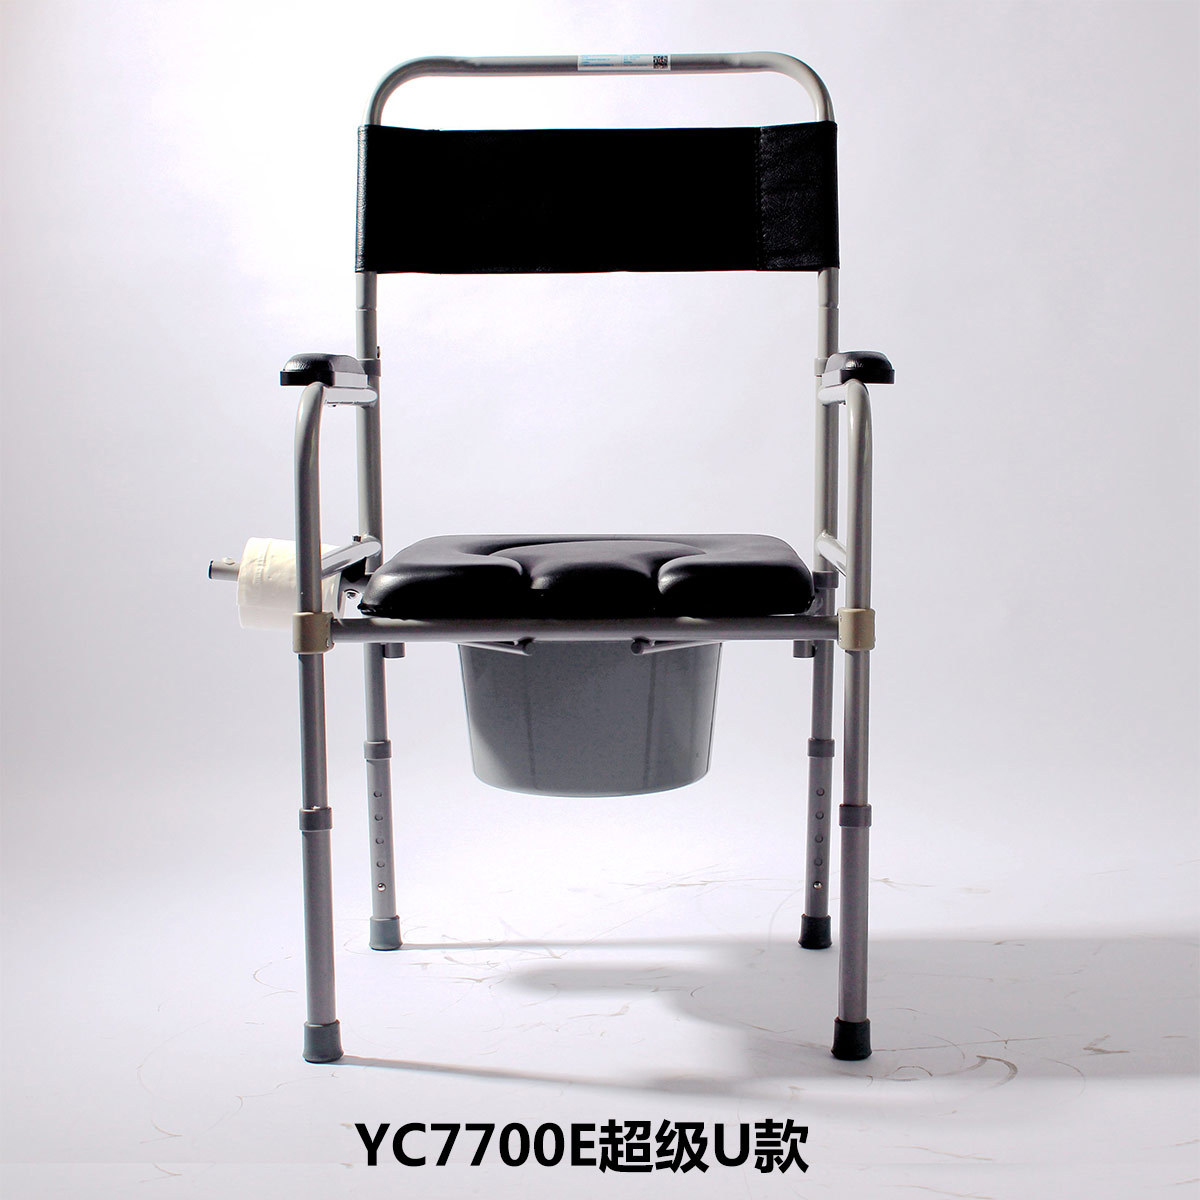 雅德YC7700E坐便椅折扣优惠信息